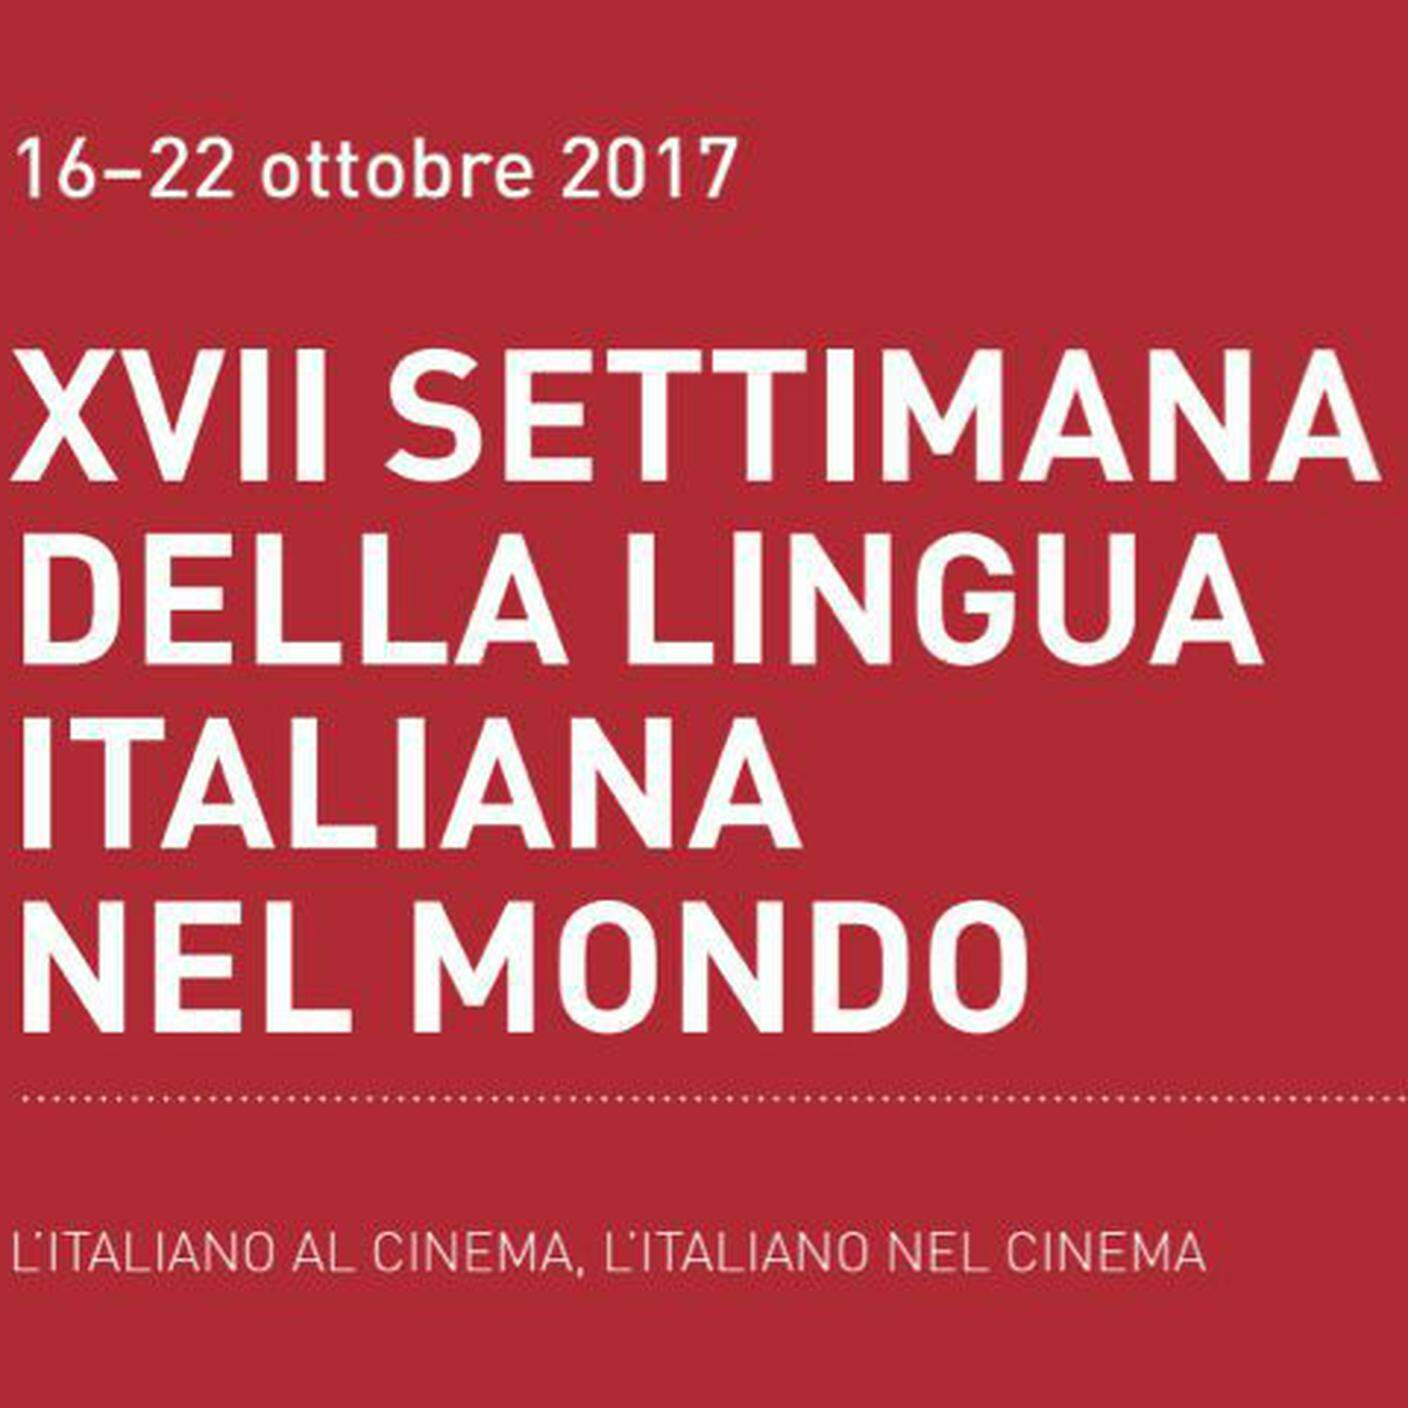 Il cinema e l'italiano